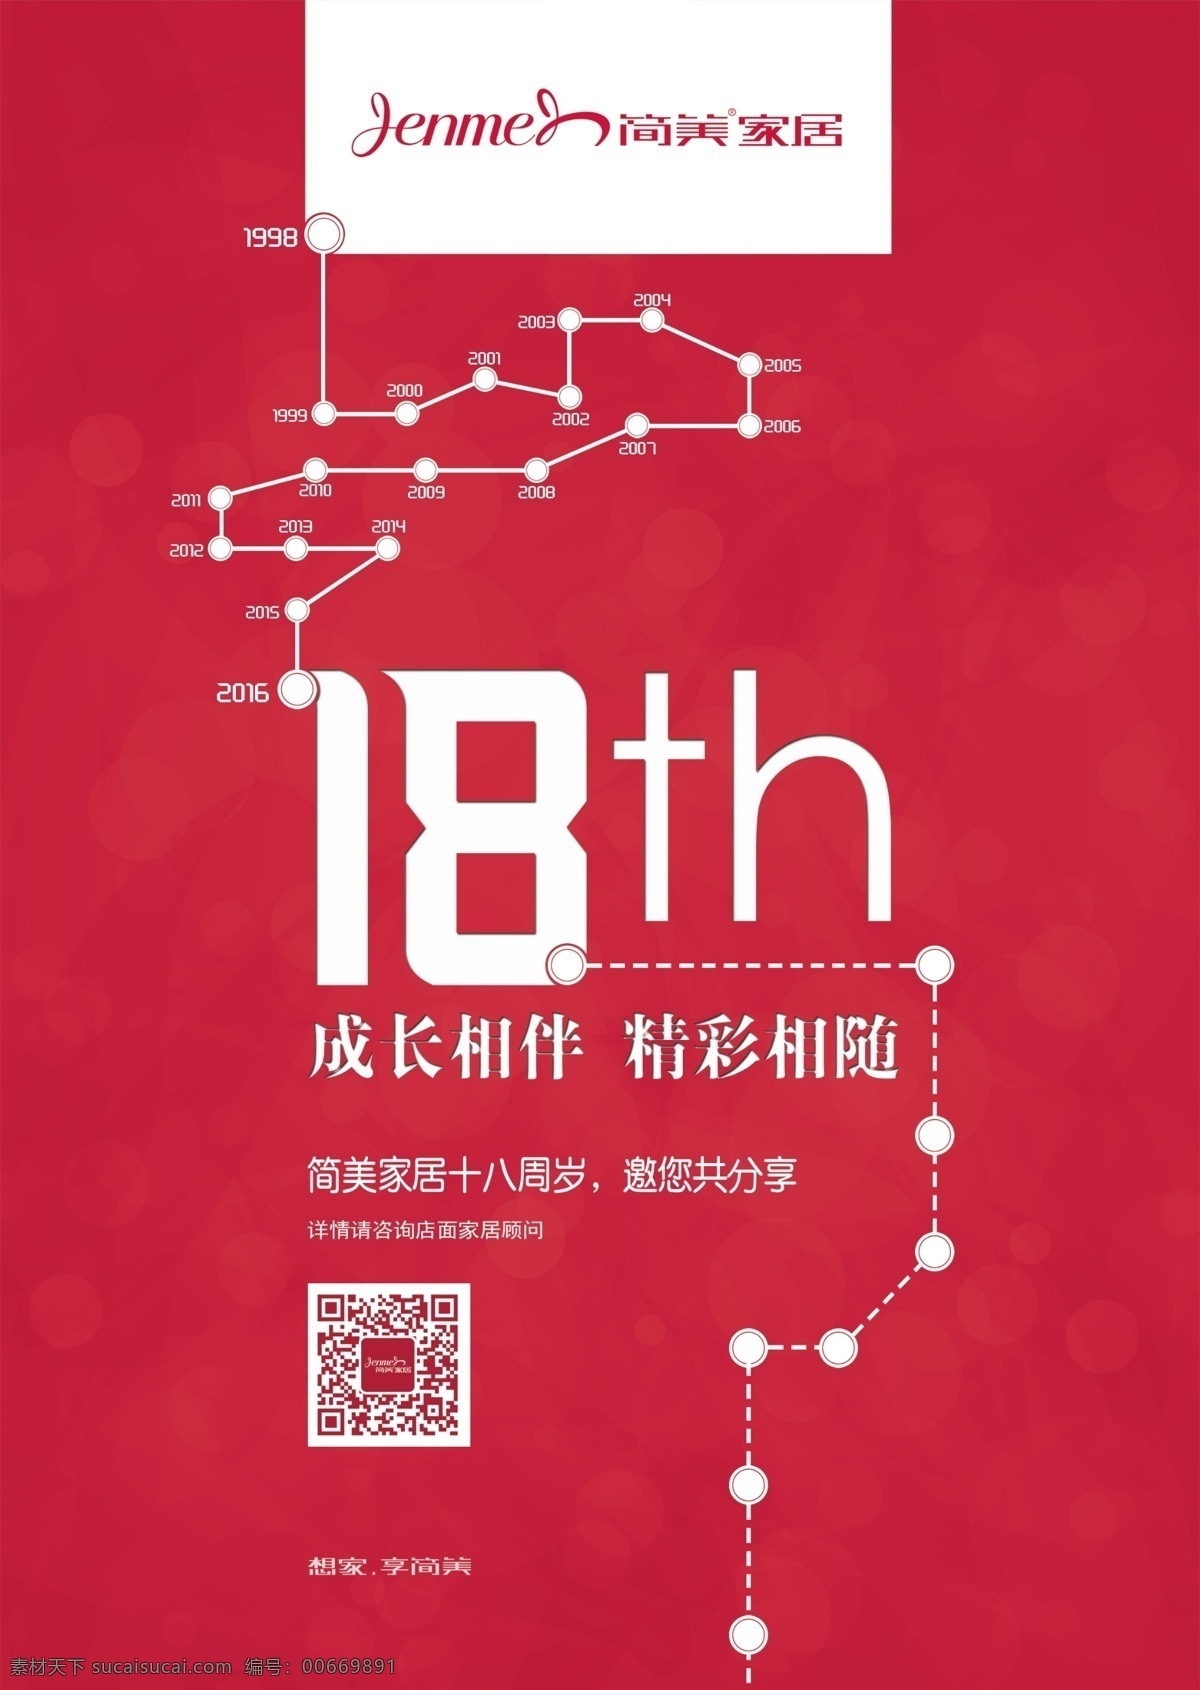 周年活动 海报 周年 店庆 活动 红色 轨迹 广告 展示 促销 优惠